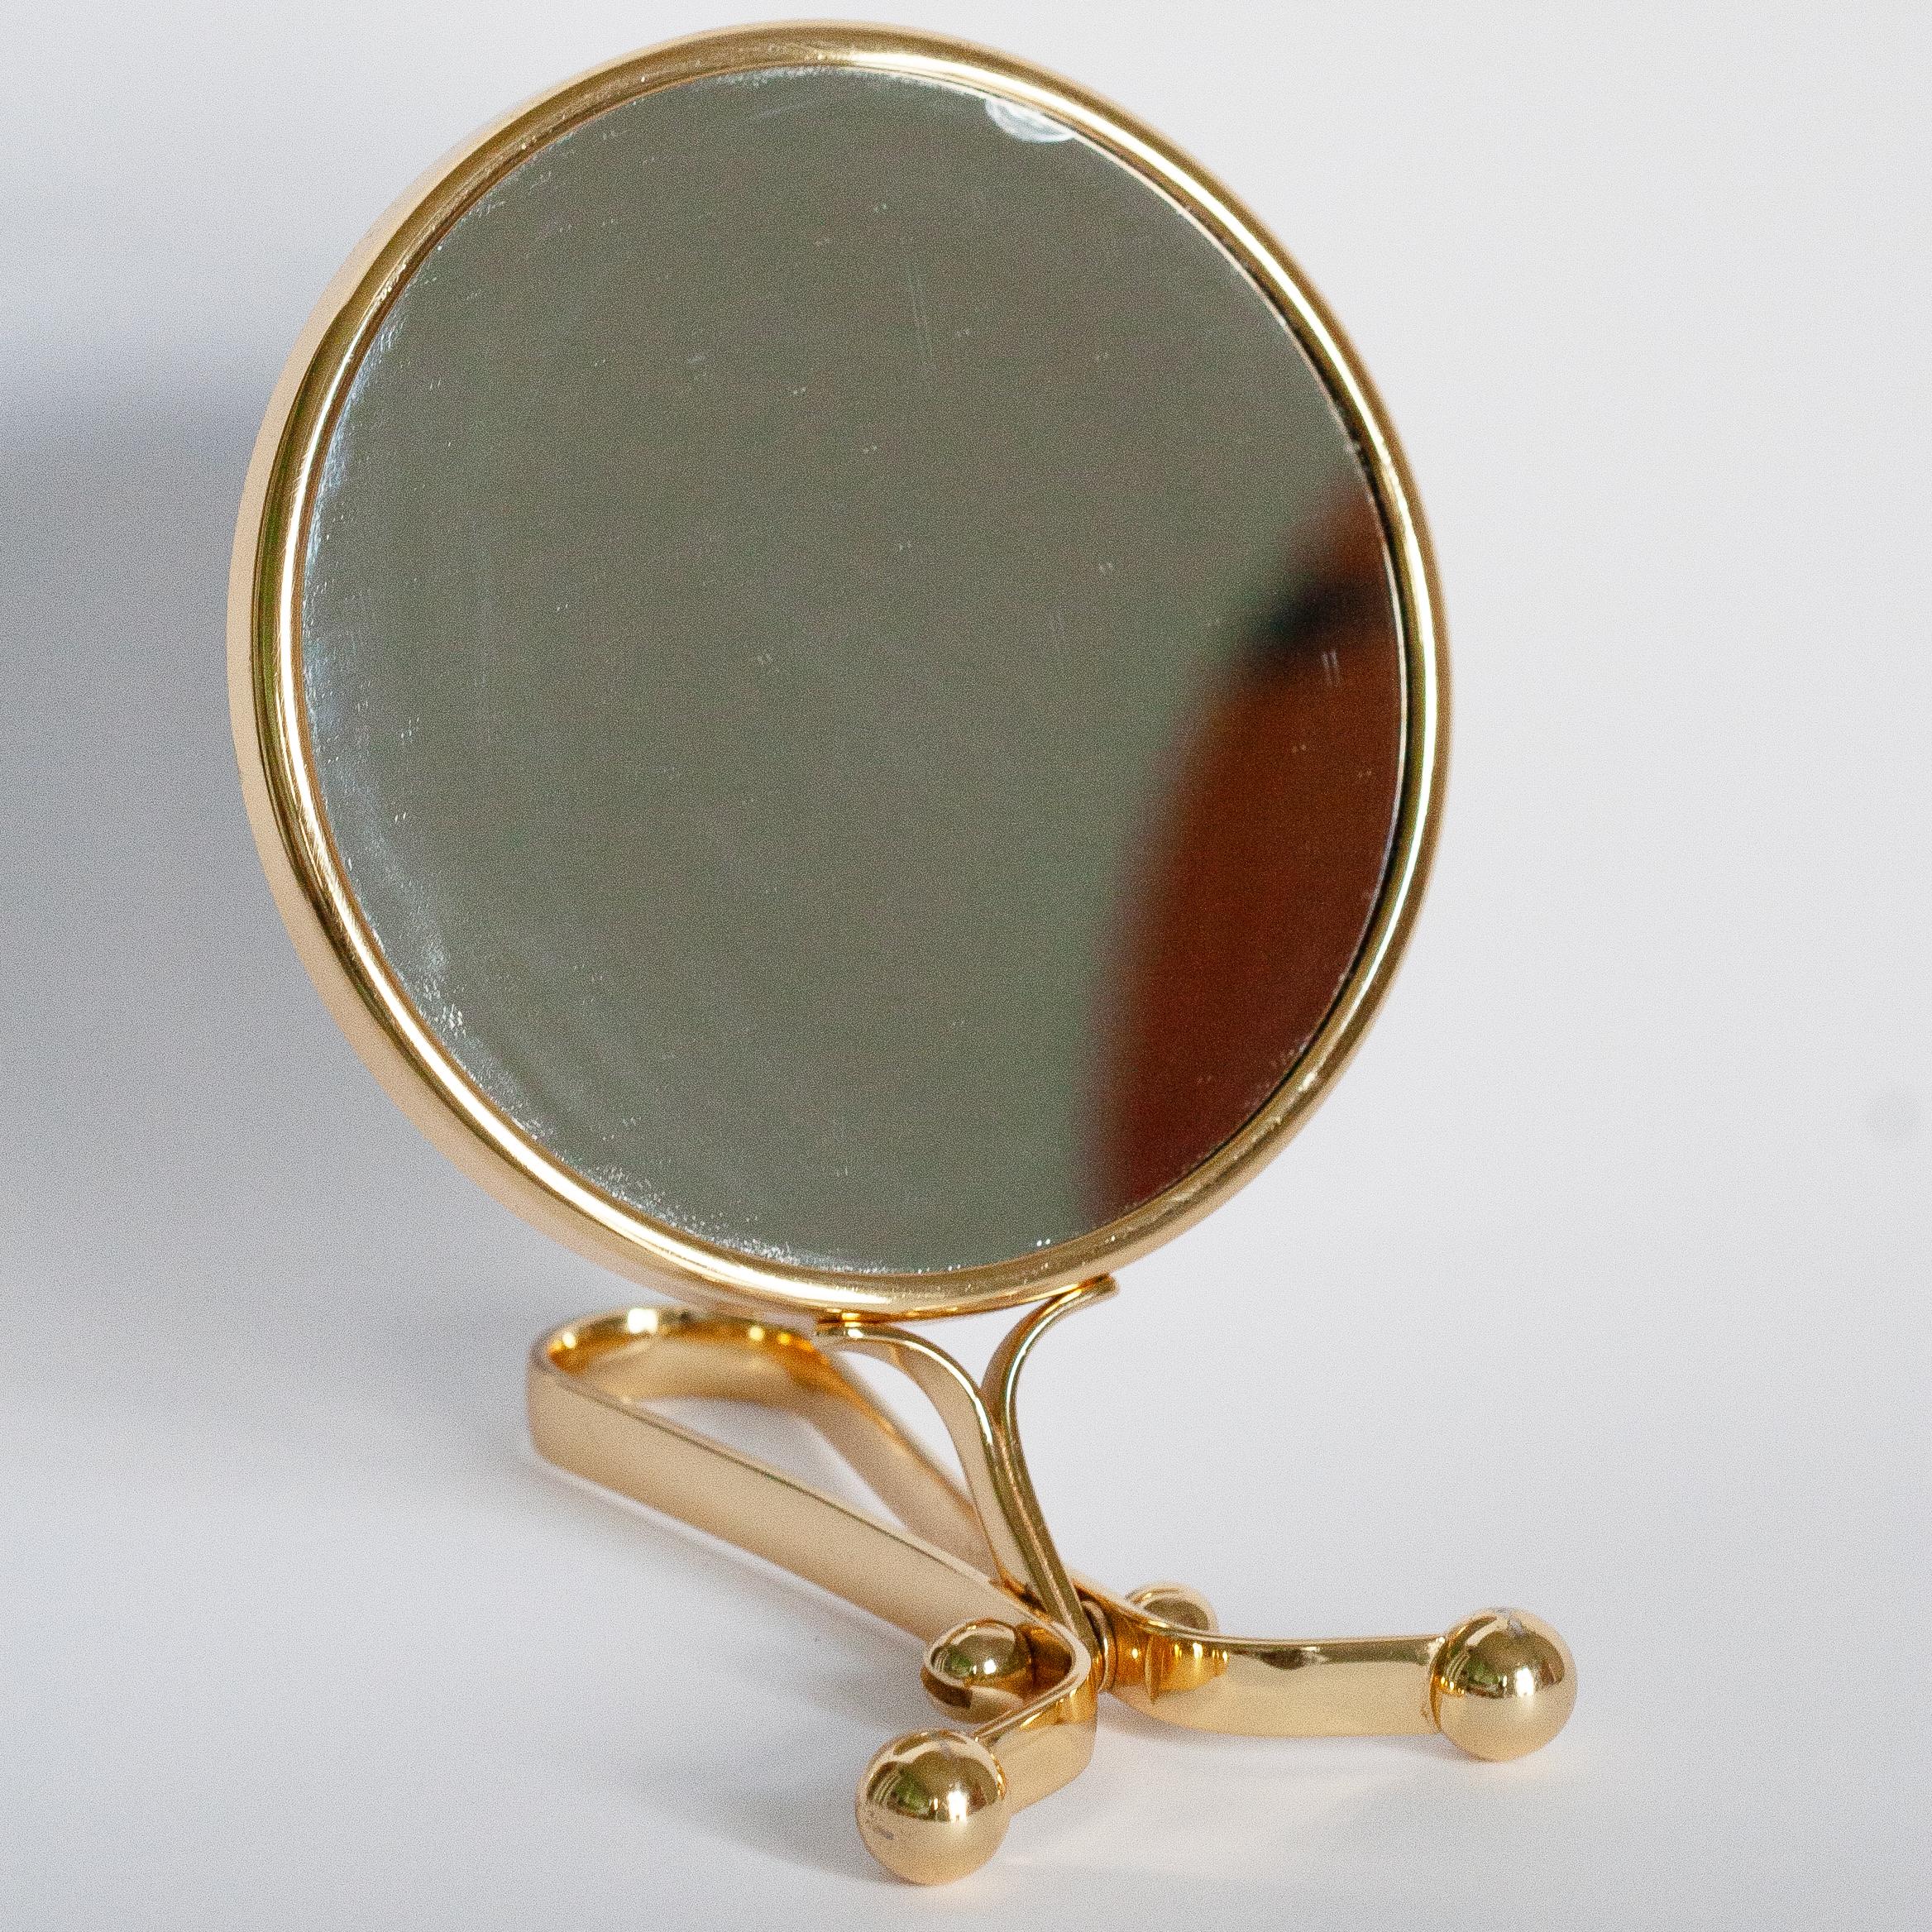 Un beau miroir dans un cadre décoratif doré en provenance d'Italie. Le cadre est en métal. Le miroir est en très bon état vintage - un éclat sur le miroir - comme indiqué sur les photos. Verre original. Une pièce vraiment unique pour chaque